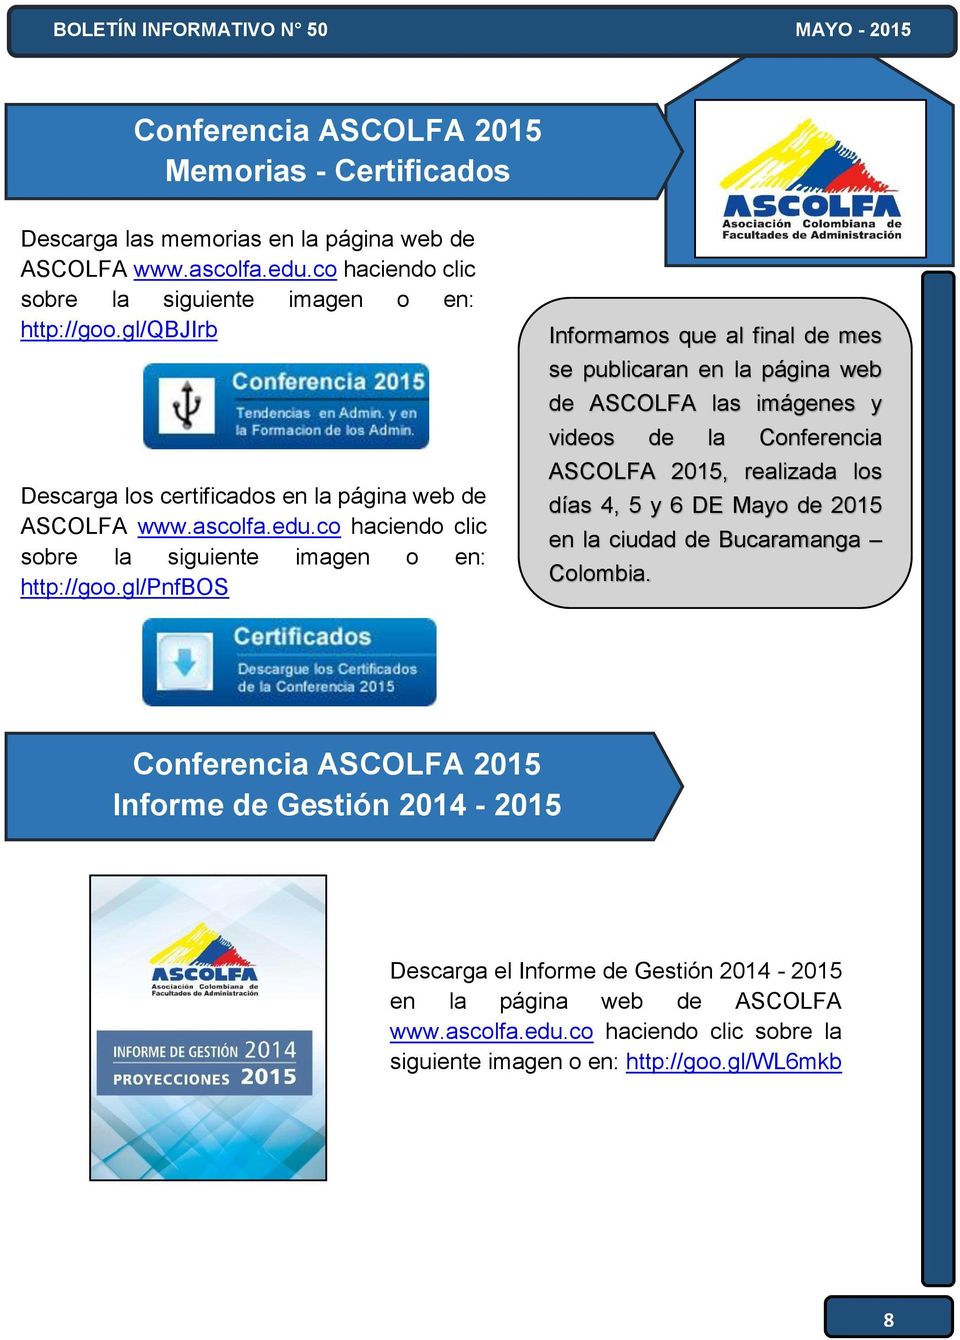 gl/pnfbos Informamos que al final de mes se publicaran en la página web de ASCOLFA las imágenes y videos de la Conferencia ASCOLFA 2015, realizada los días 4, 5 y 6 DE Mayo de 2015 en